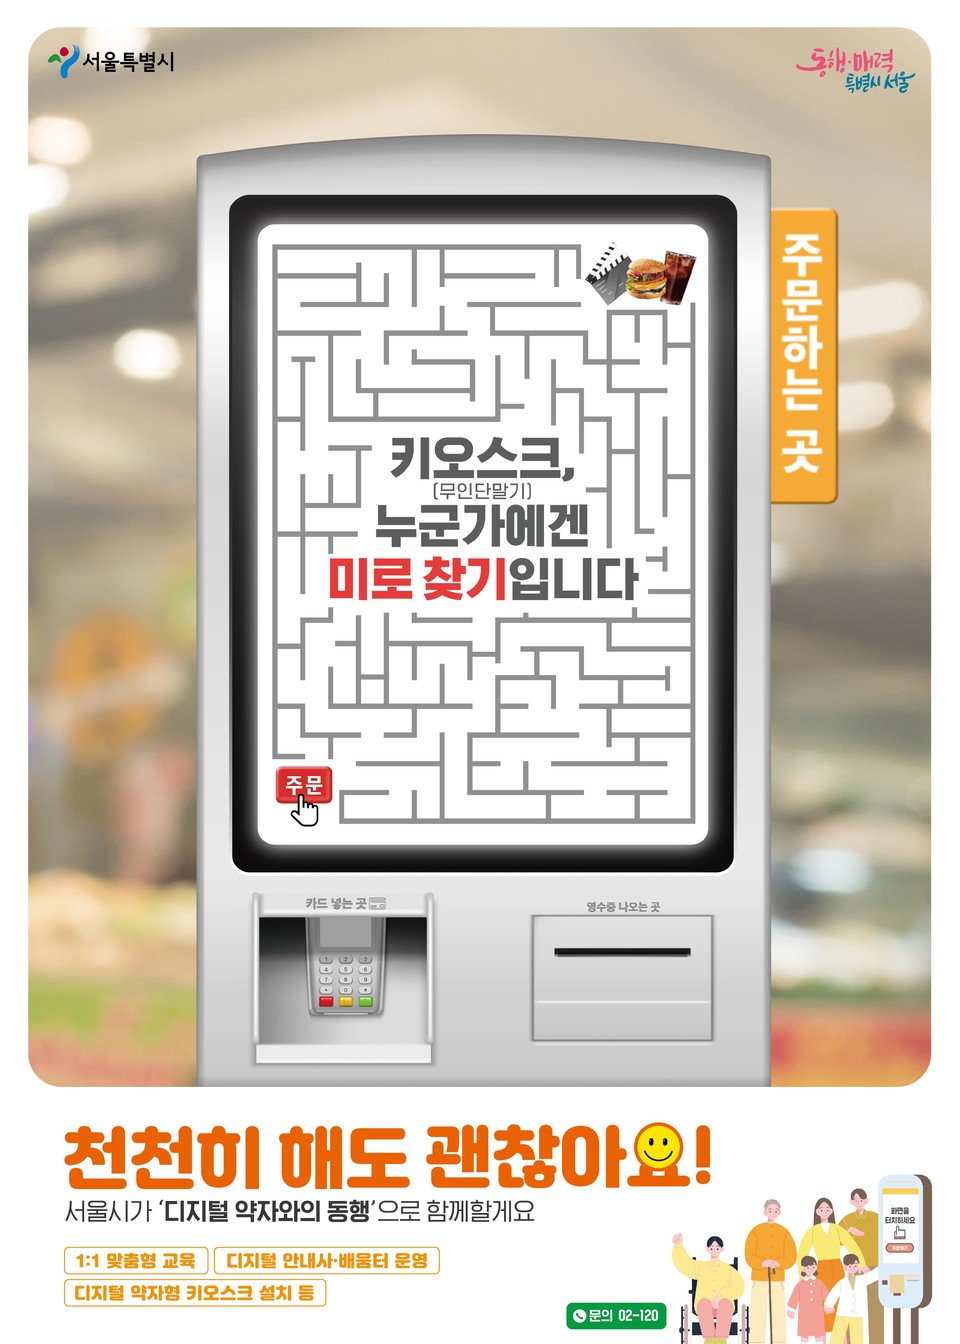 ‘디지털 약자와의 동행’ 캠페인 포스터